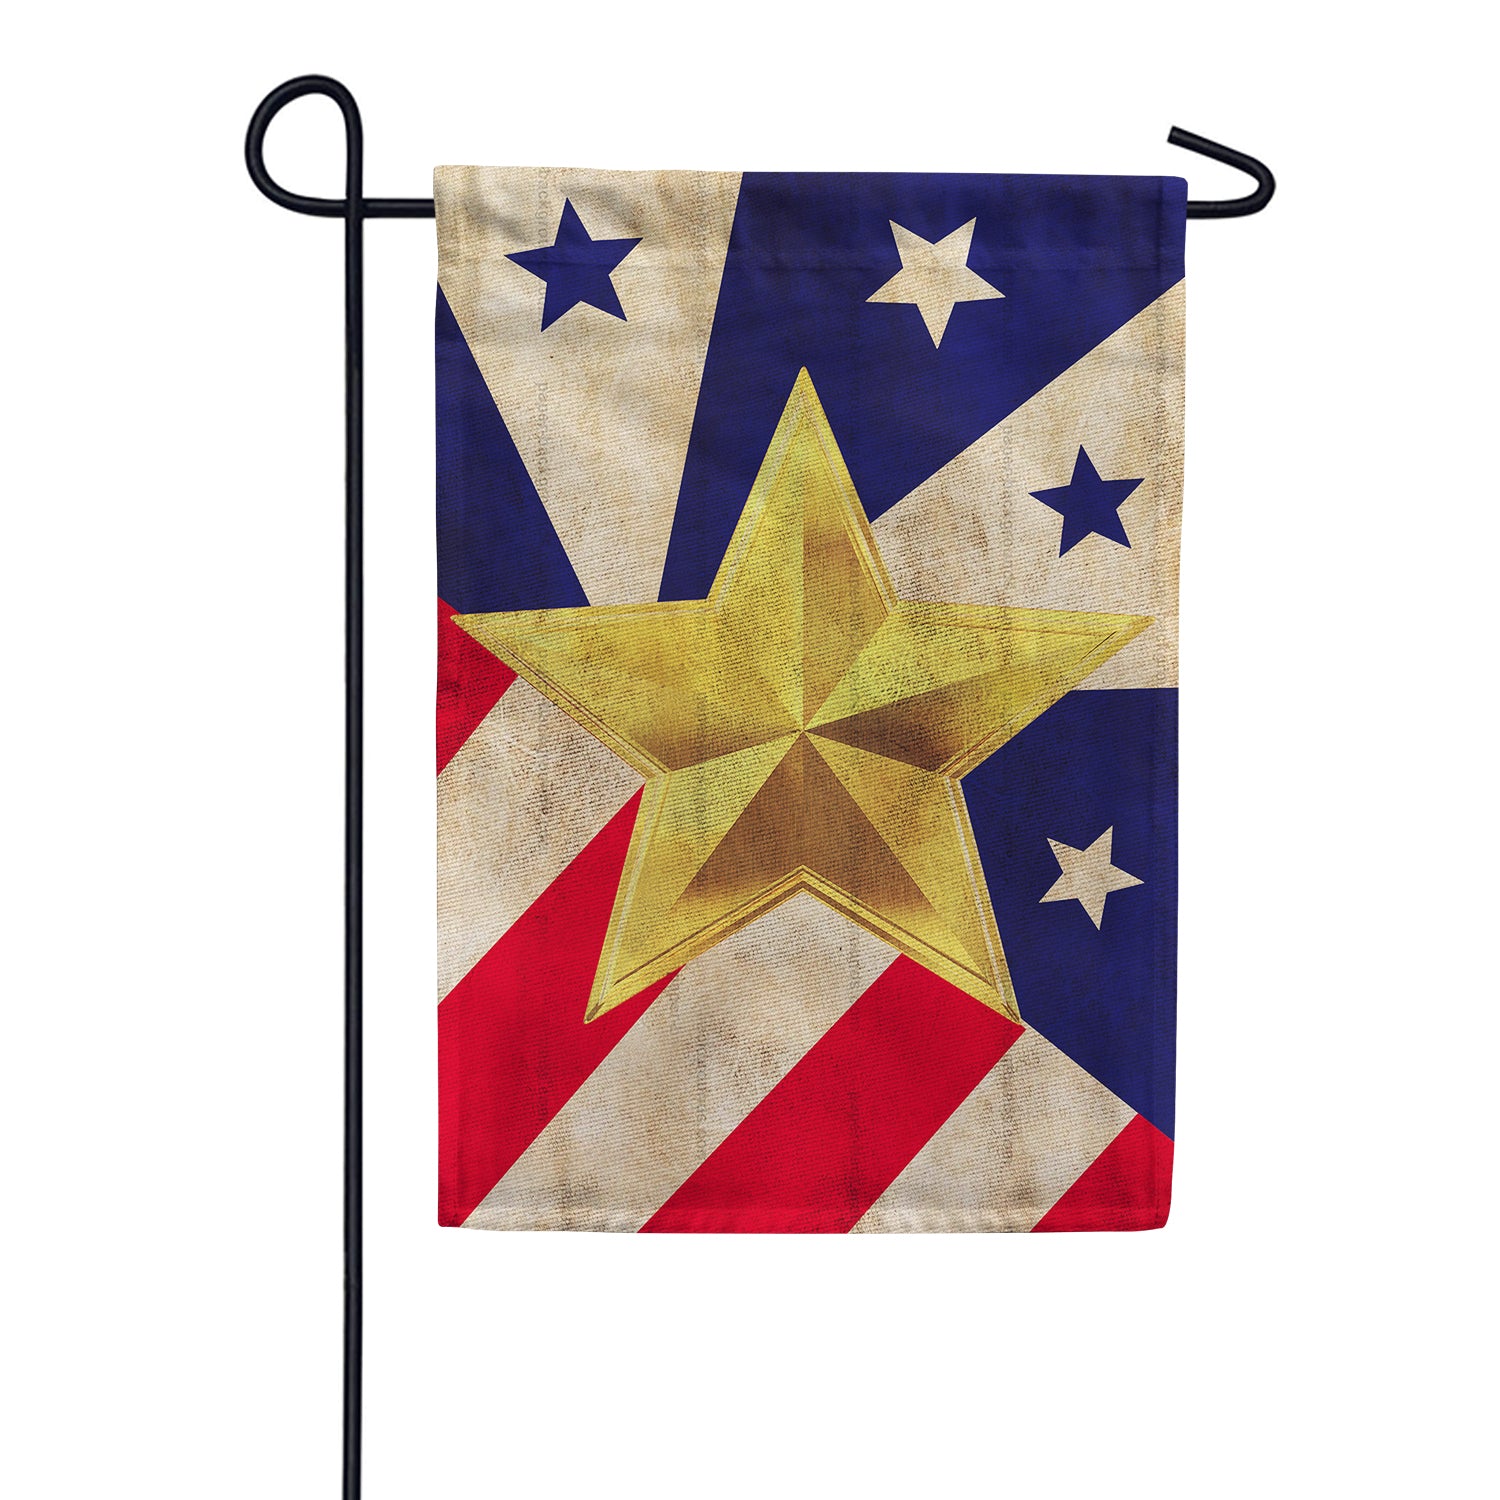 Lá cờ với hình chữ ngôi sao vàng lóng lánh trên nền màu đen của American Gold Star Garden Flag gợi lên sự tôn trọng và tri ân đối với những người lính đã hy sinh trong chiến tranh. Hãy xem hình ảnh này để tưởng nhớ những anh hùng đã cống hiến hết mình vì đất nước.